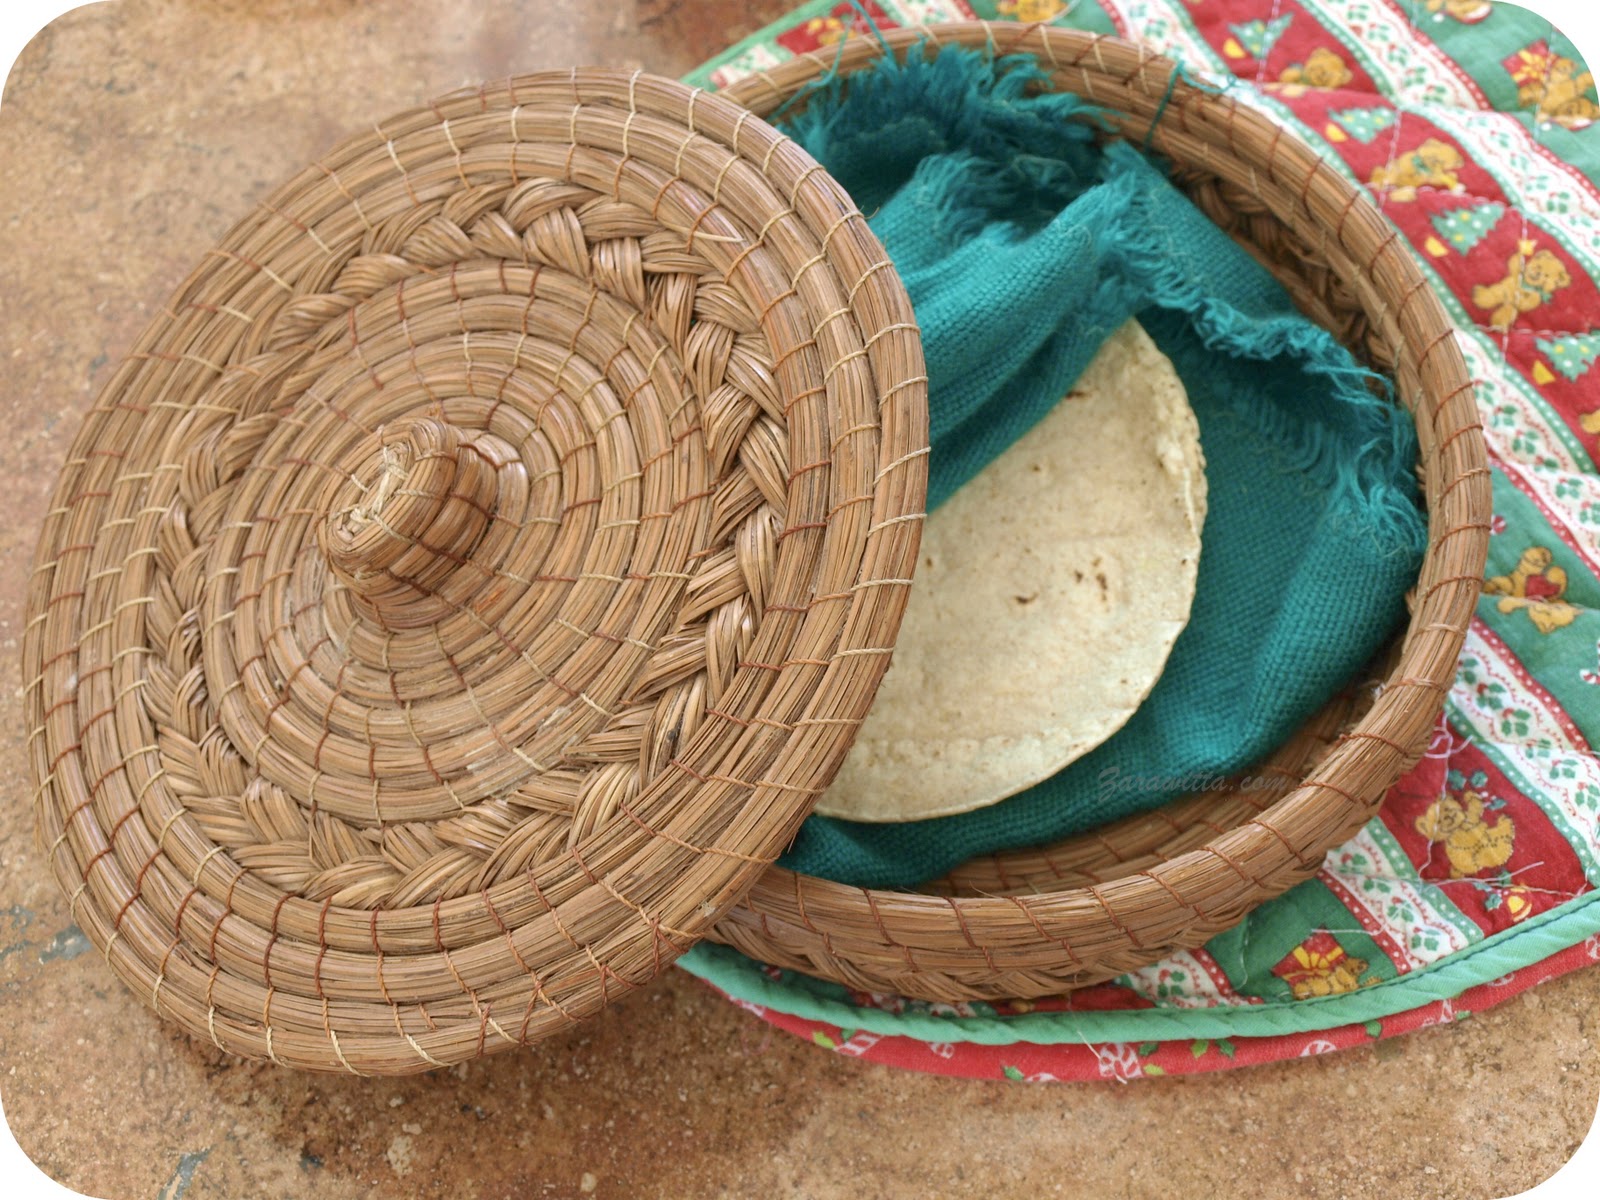  La anfitriona de las mesas mexicanas, la tortilla